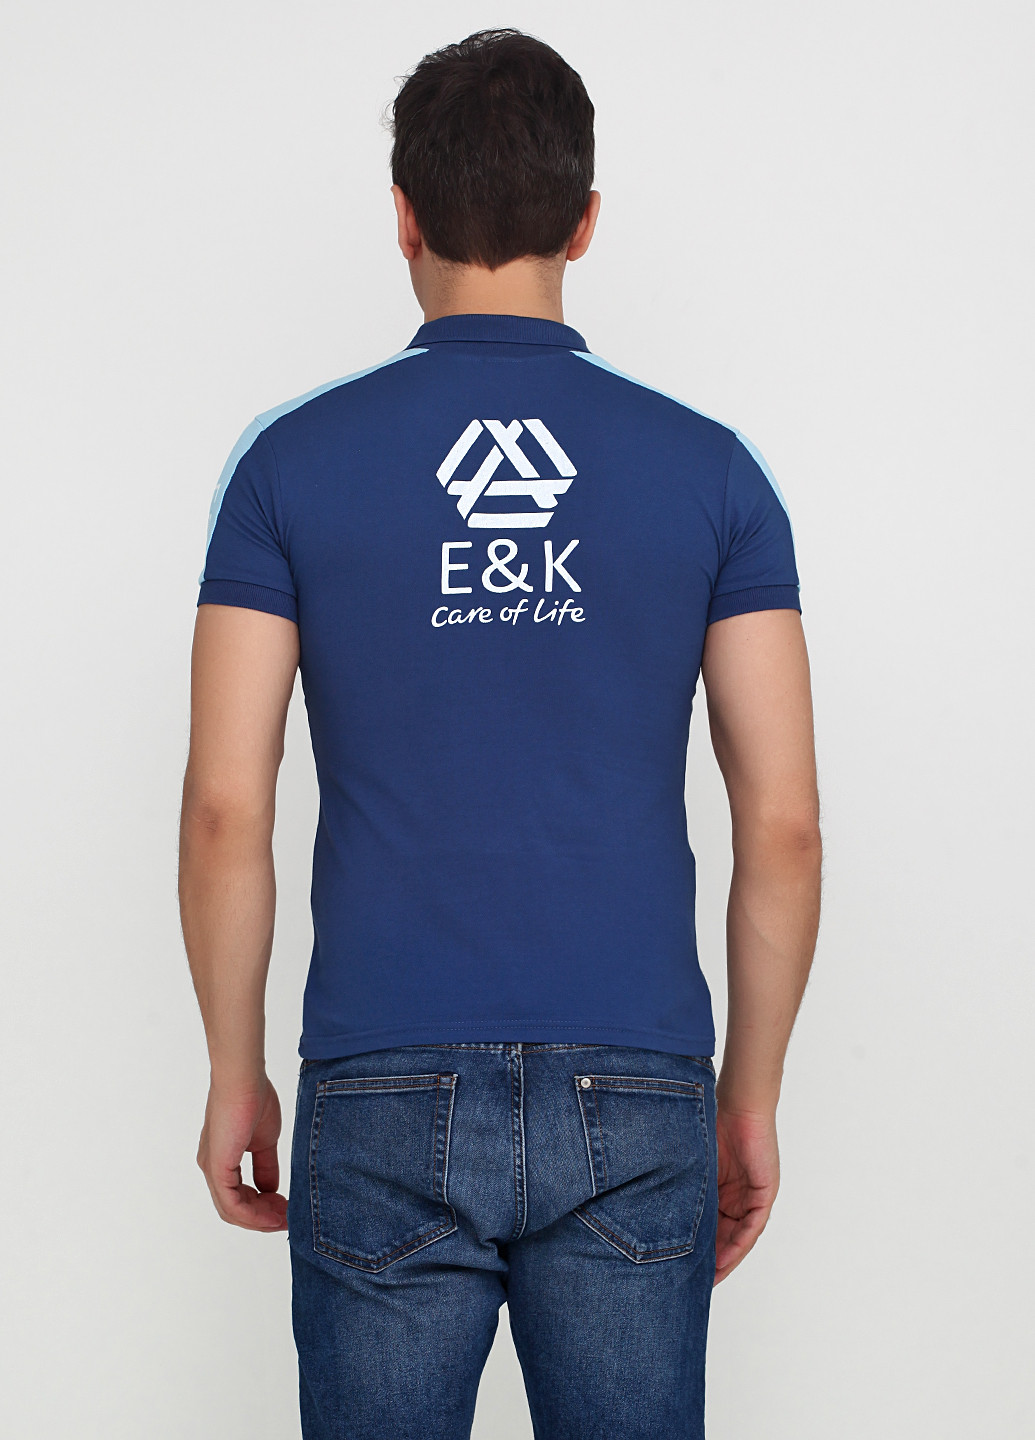 Темно-синяя футболка-поло для мужчин EL & KEN с надписью